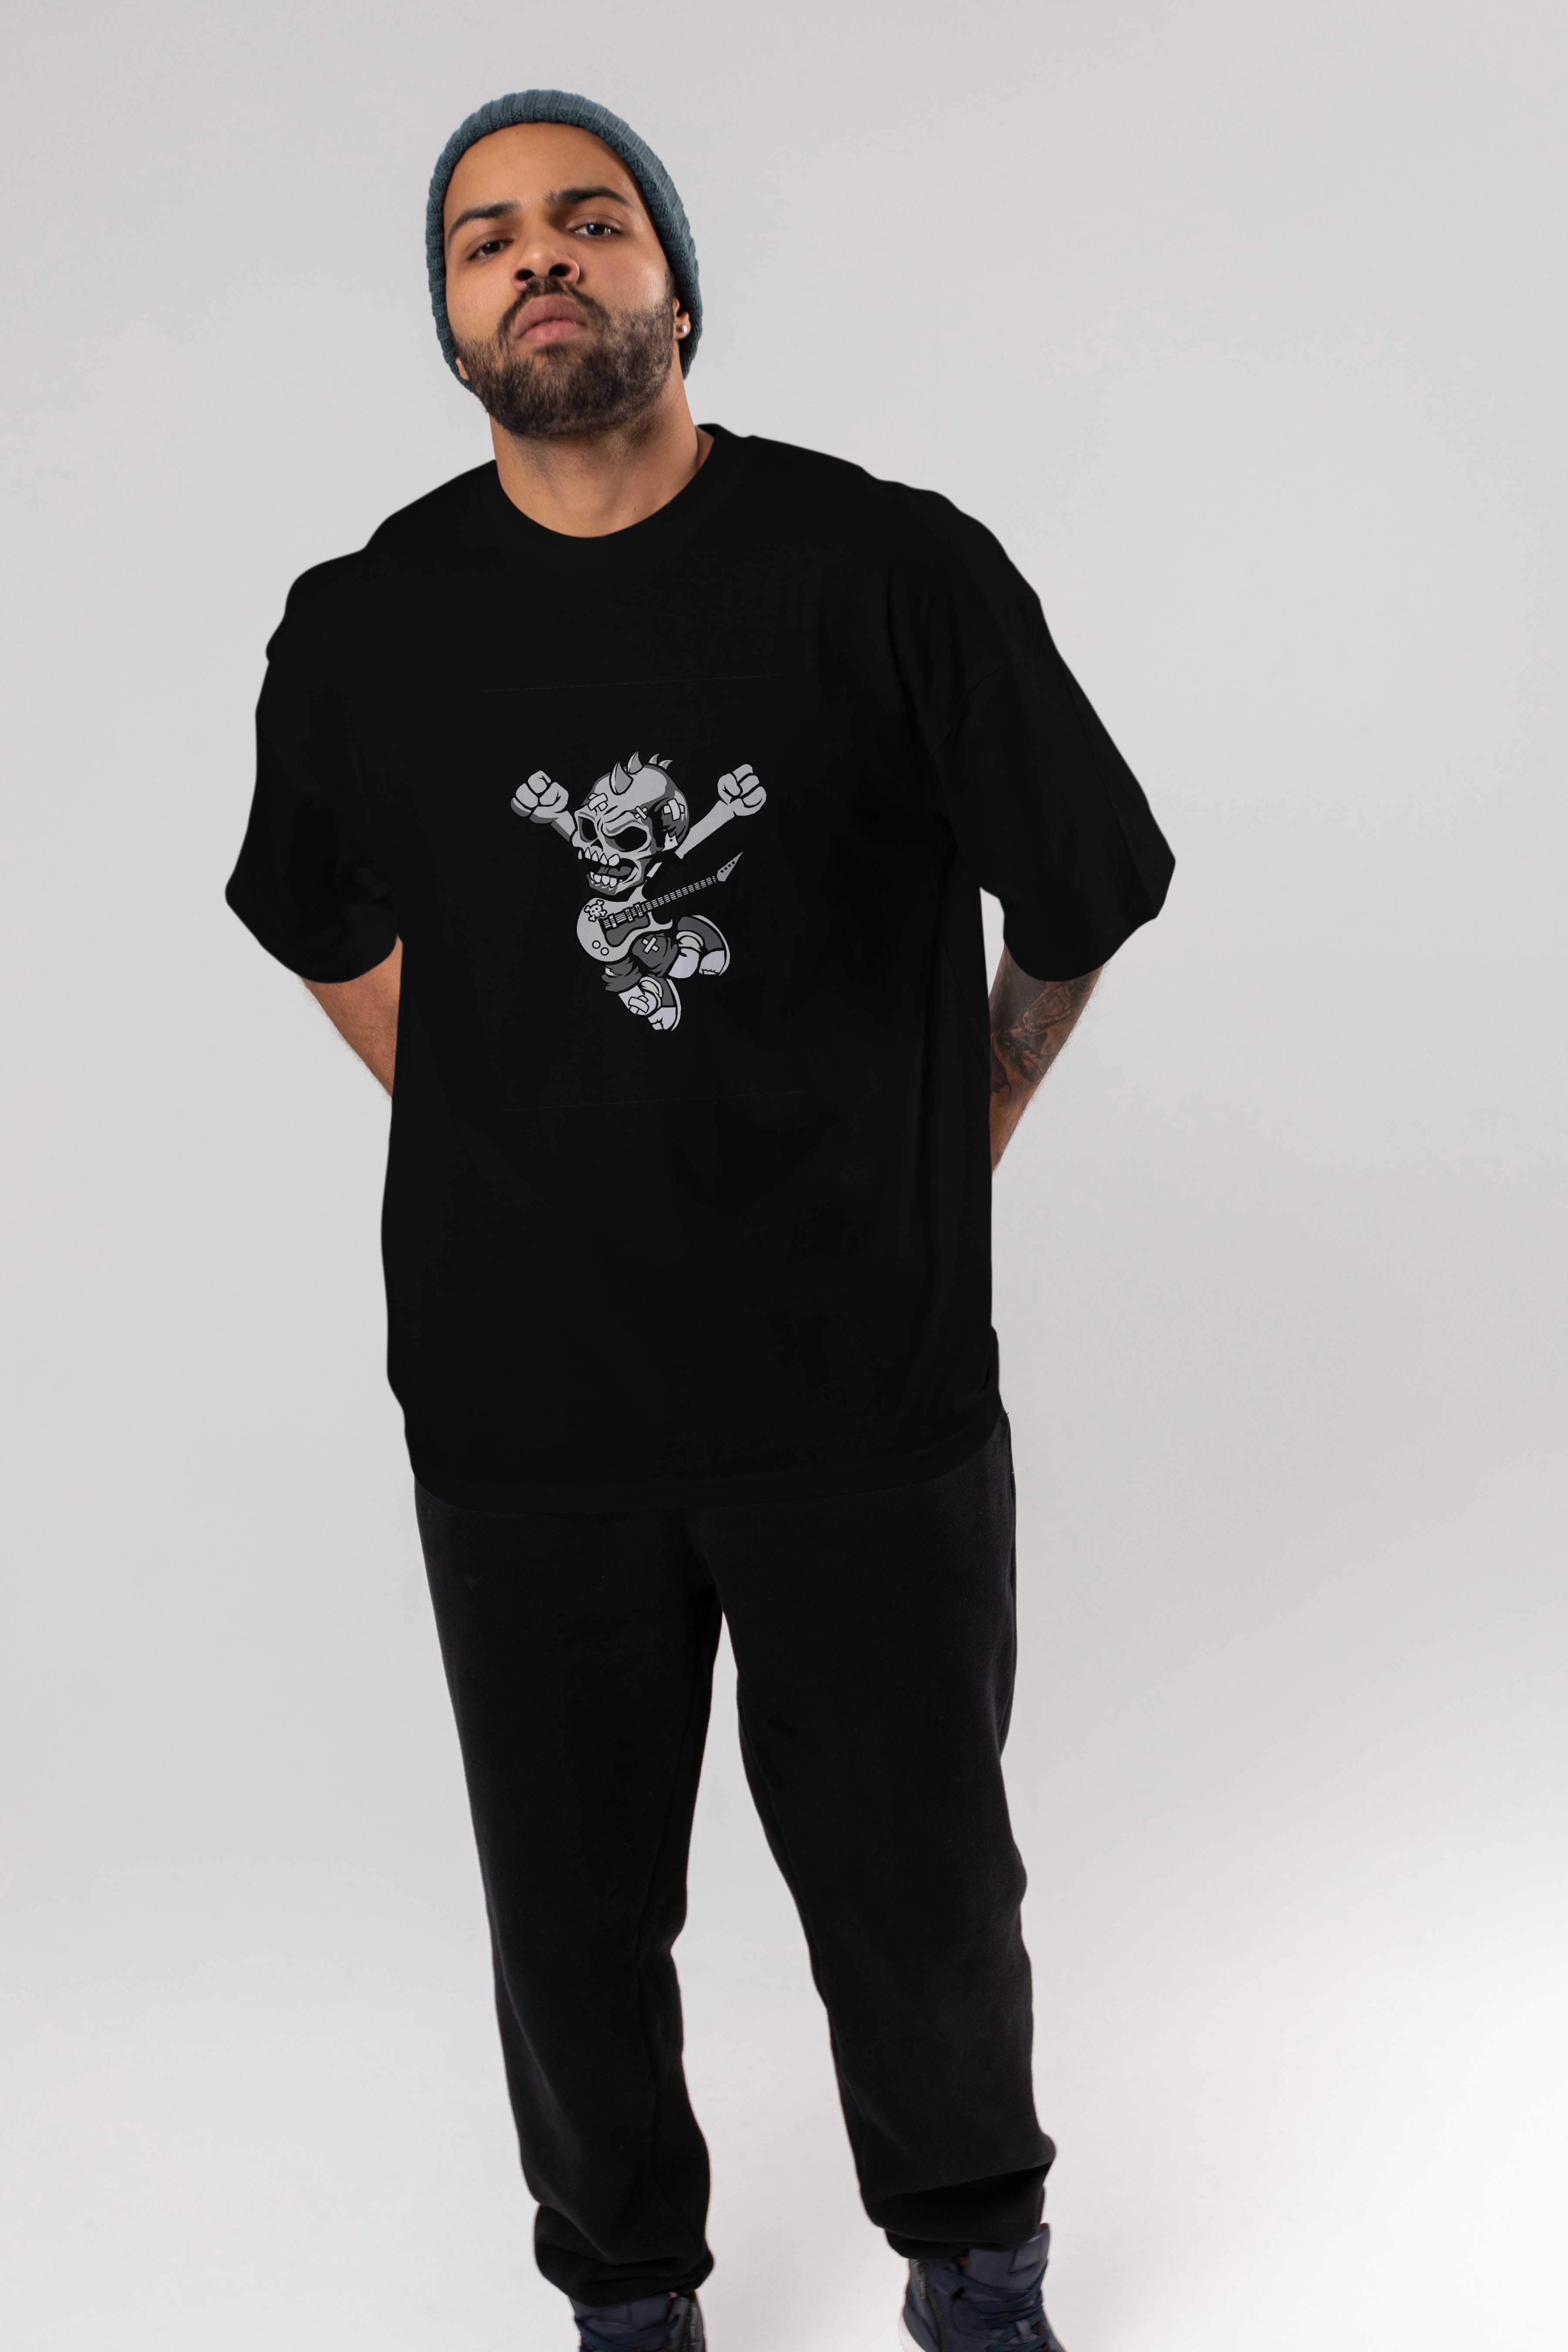 Punk Rocker Metal Guitar Ön Baskılı Oversize t-shirt Erkek Kadın Unisex %100 Pamuk tişort